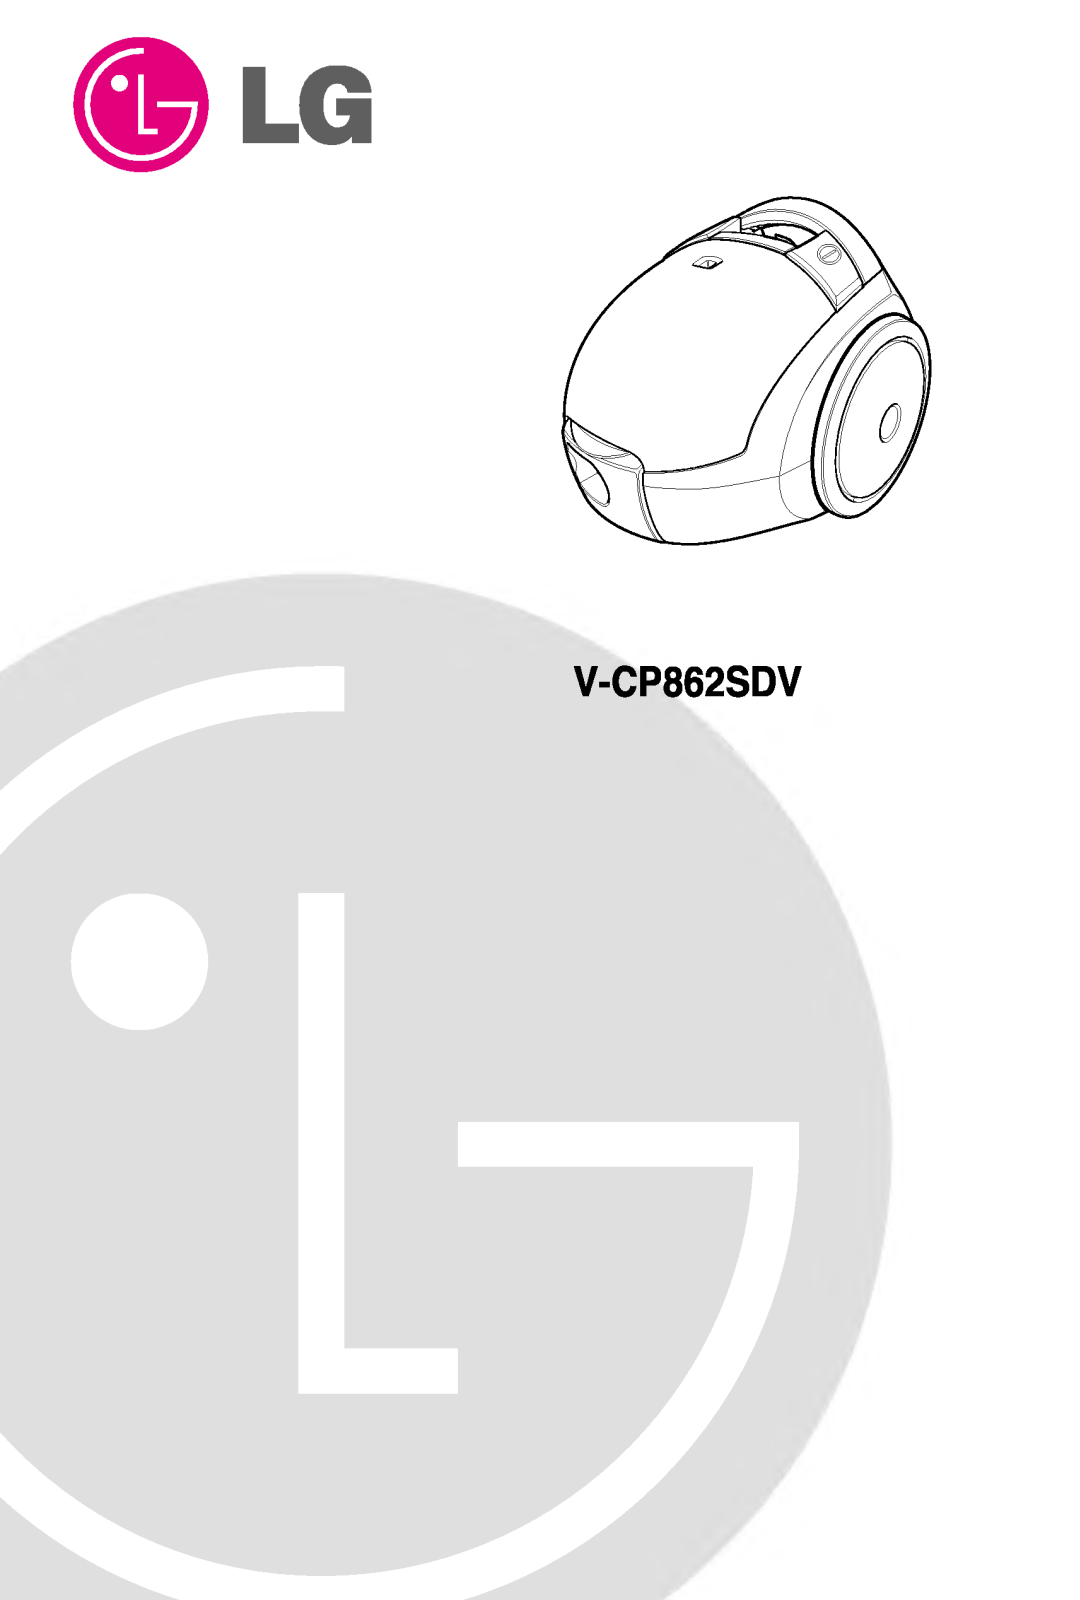 LG V-CP862SDV User Manual